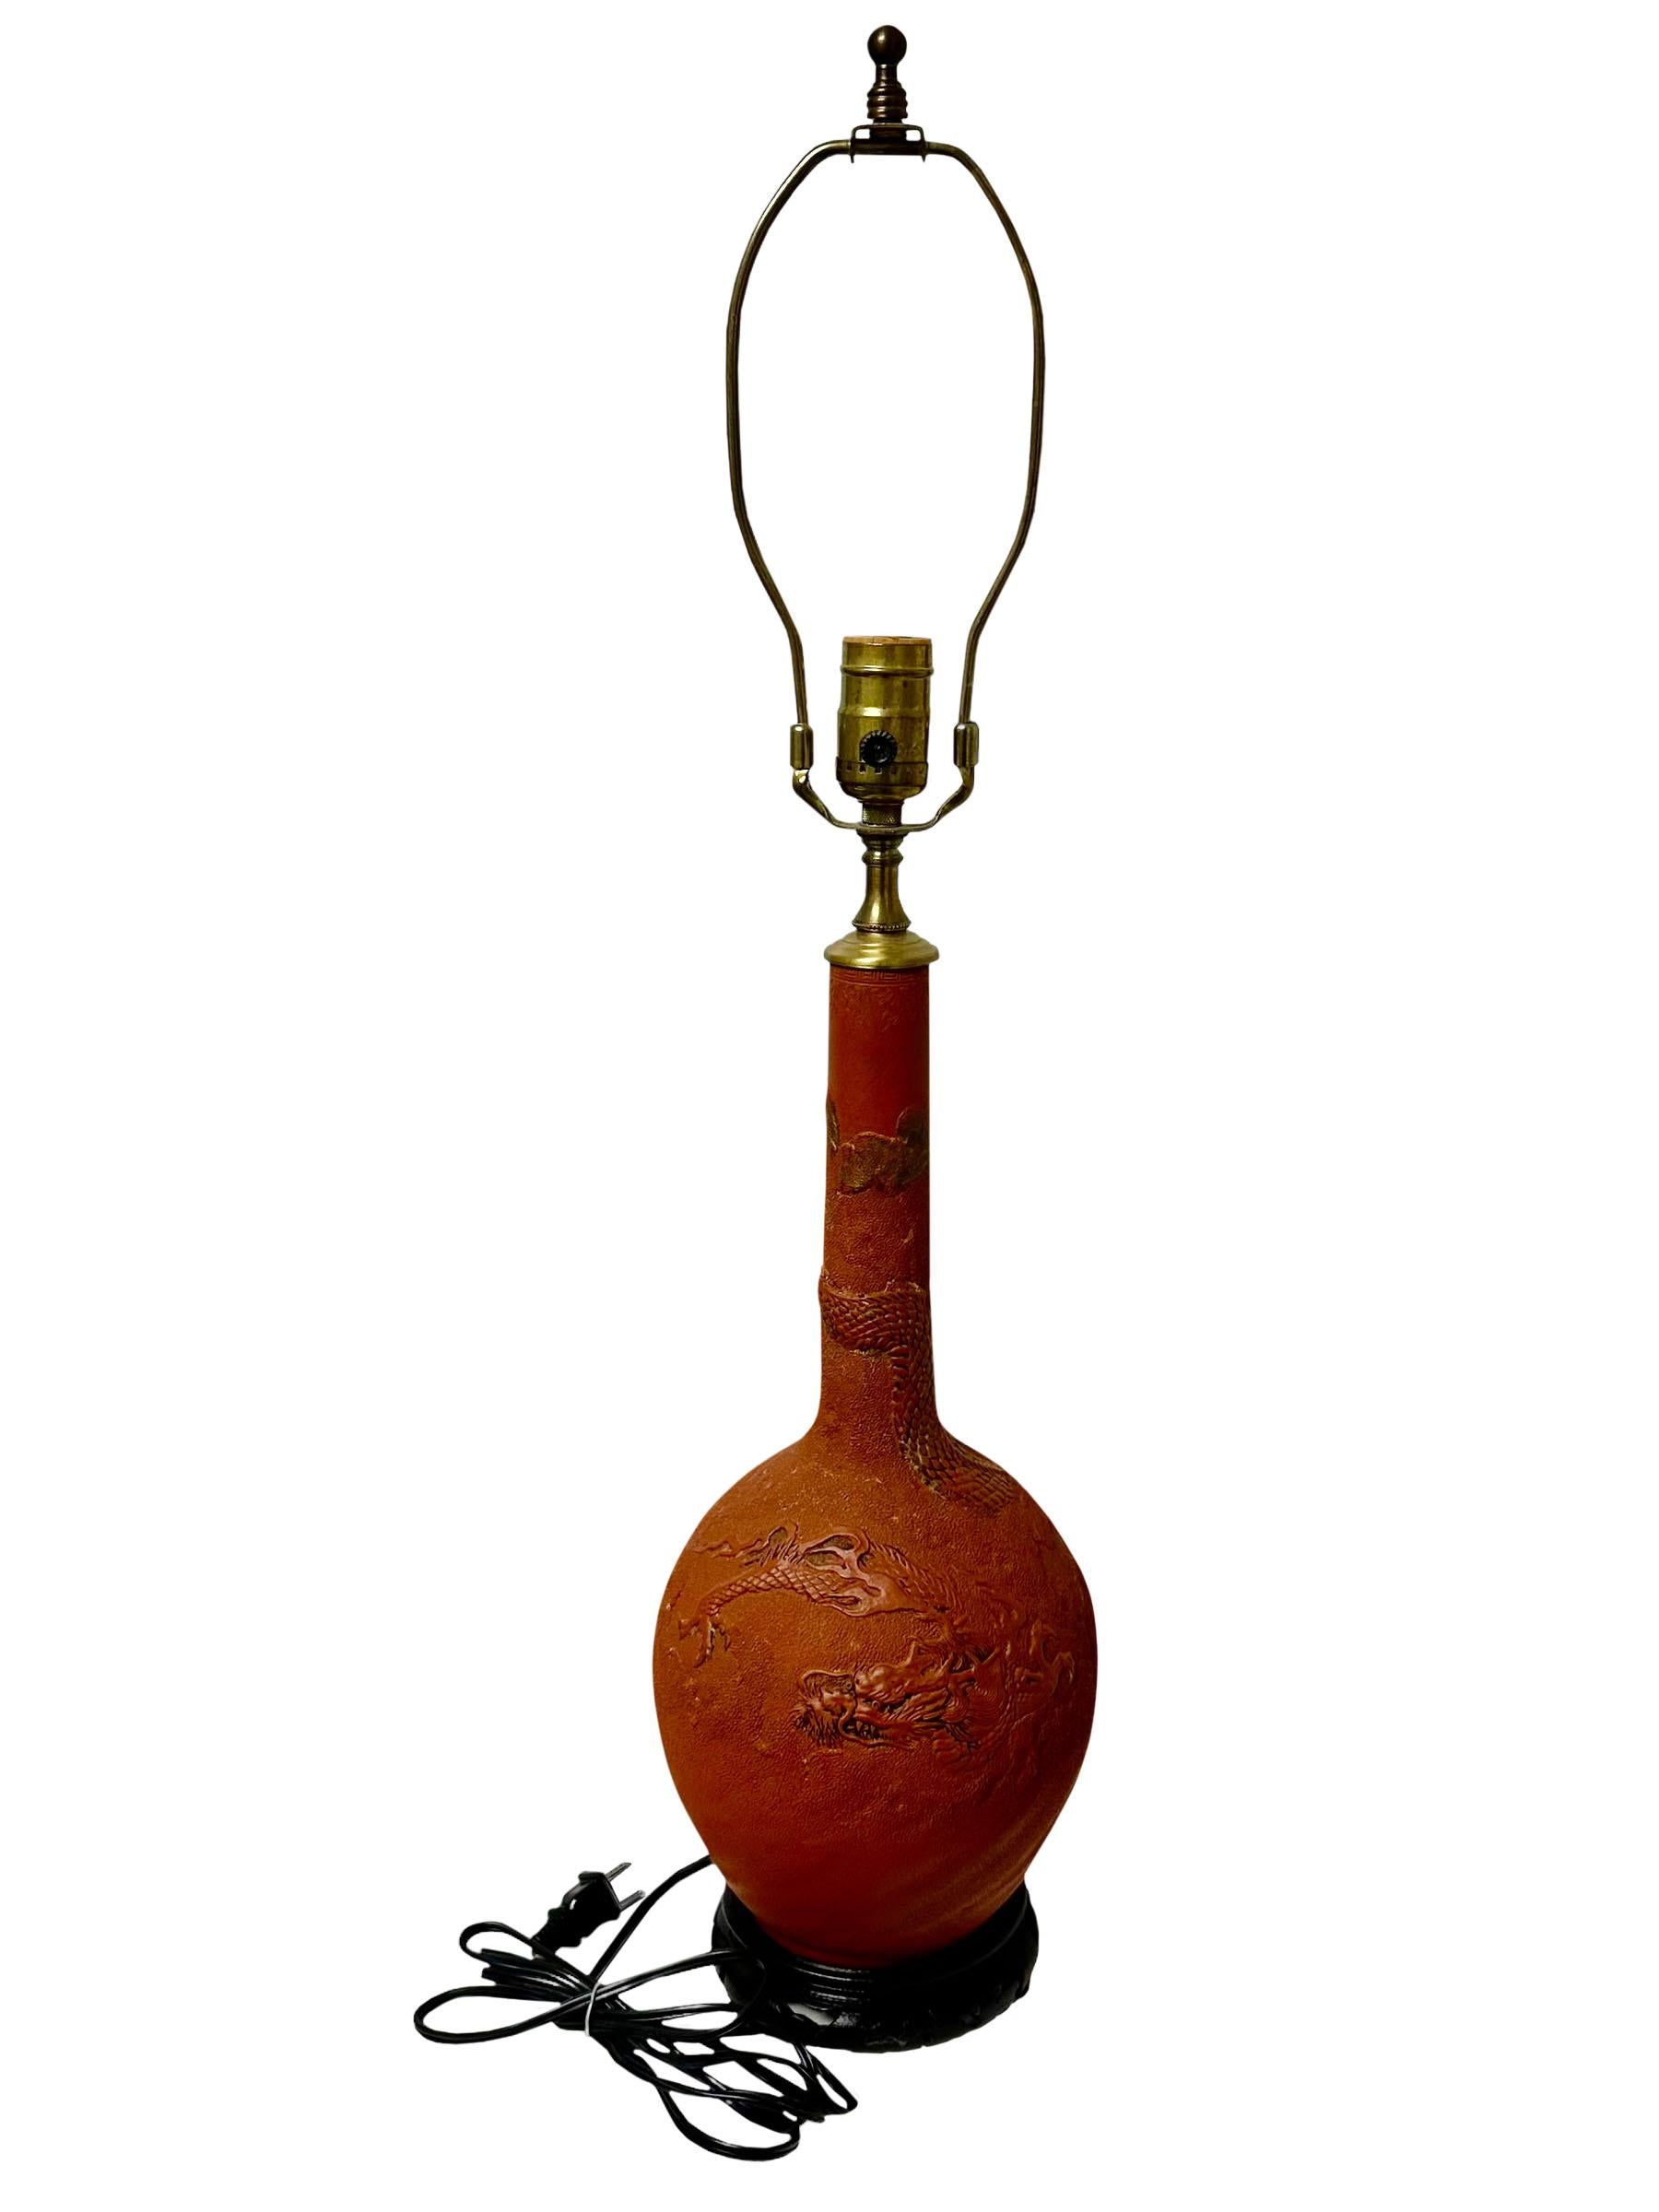 Lampe japonaise ancienne en faïence rouge décorée de dragons. Socle chinois en bois brun foncé. La lampe date du début du siècle et a été transformée en lampe probablement dans les années 1980. Elle est dotée d'un petit embout en laiton. Circa 1915,